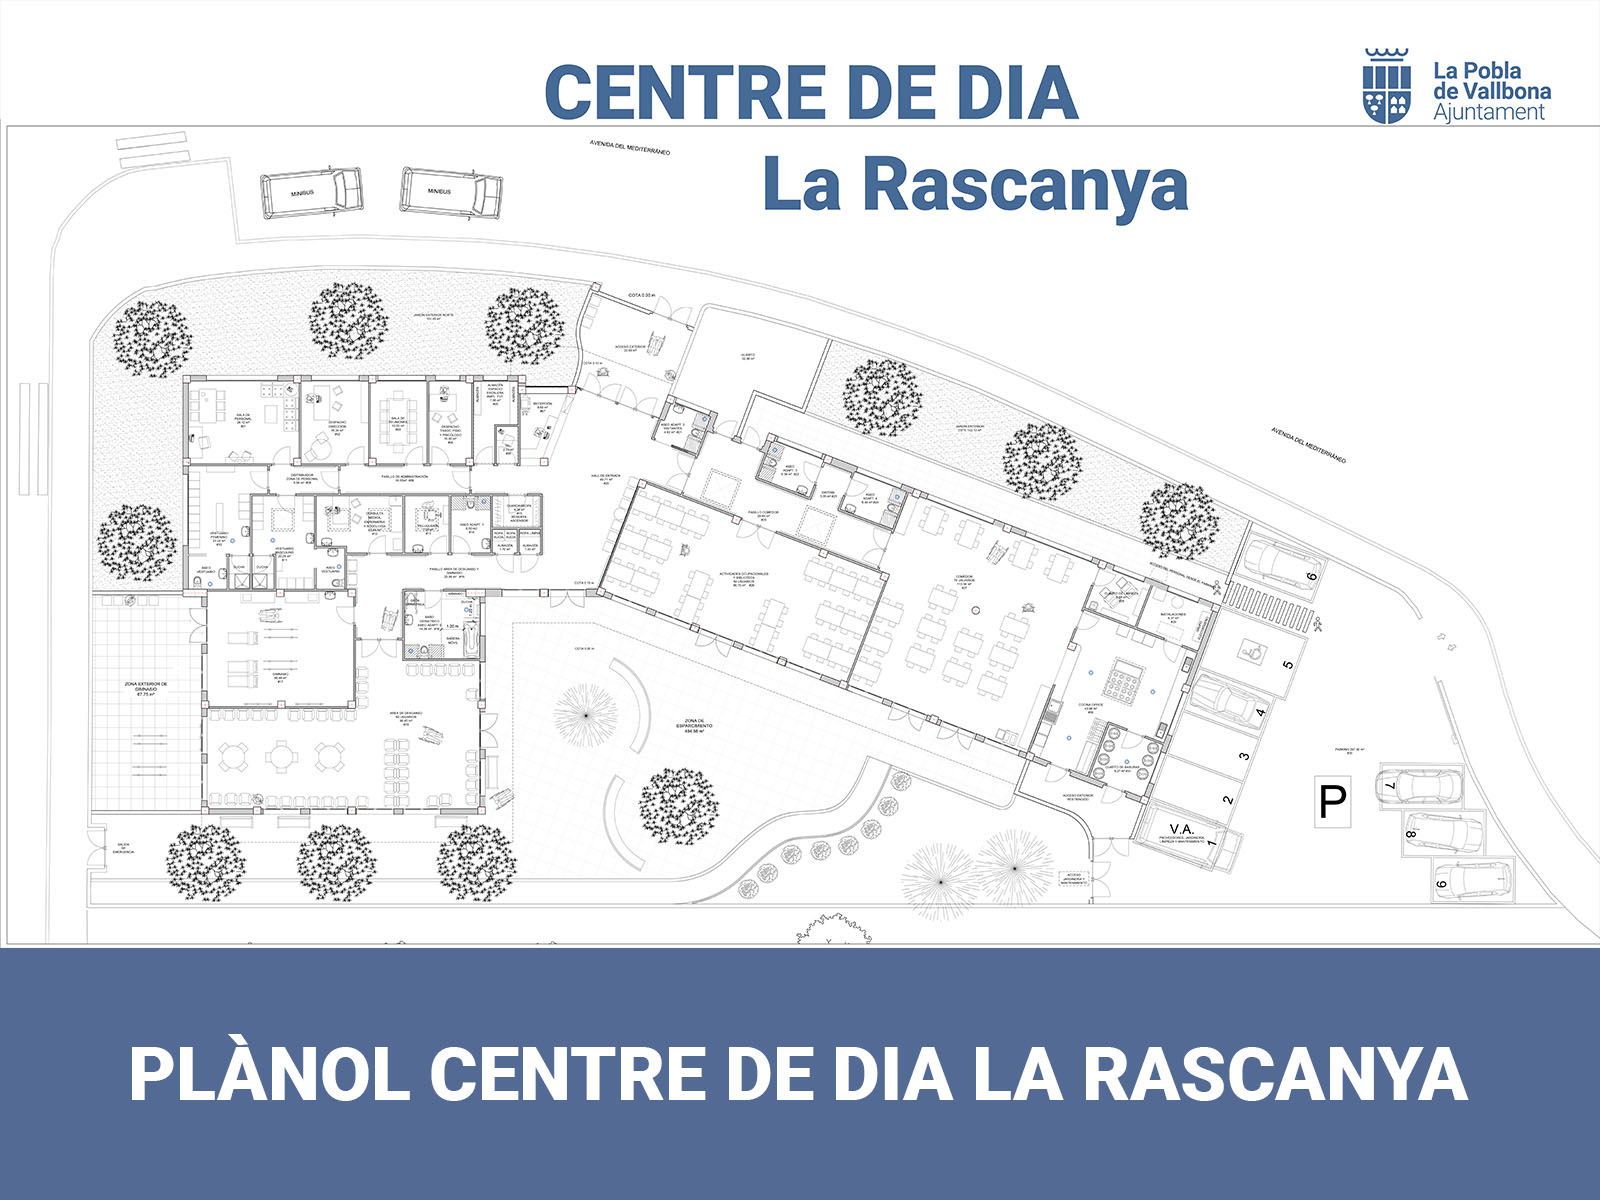 La Pobla de Vallbona adjudica la redacció del projecte del nou Centre de Dia La Rascanya